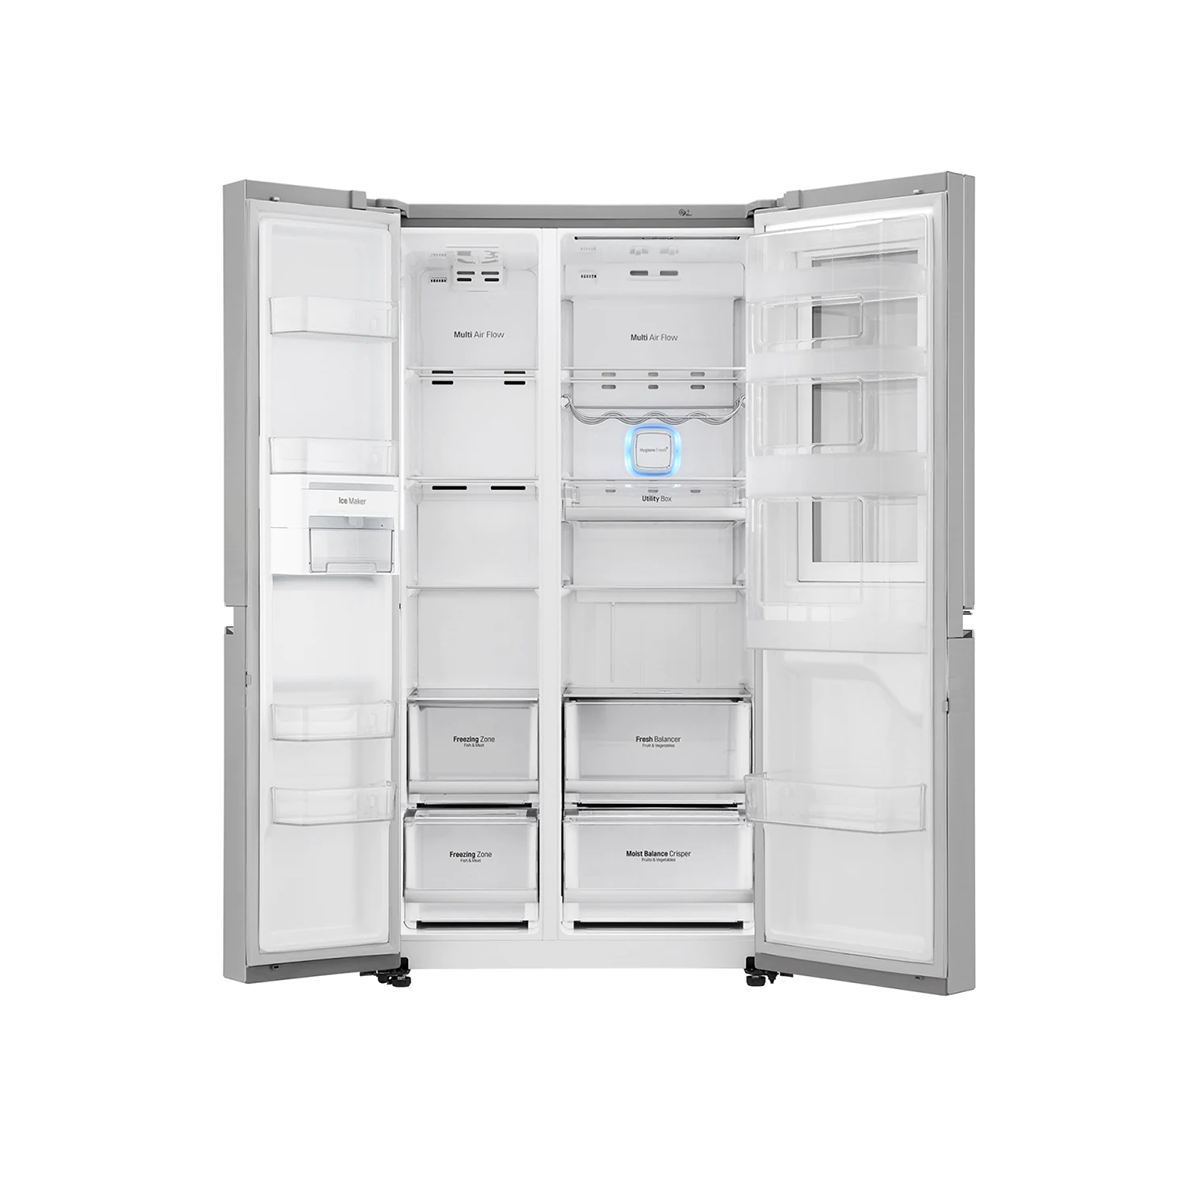 LG 687L Side-by-Side Refrigerator with Door Cooling+ Technology & InstaView Door-in-Door